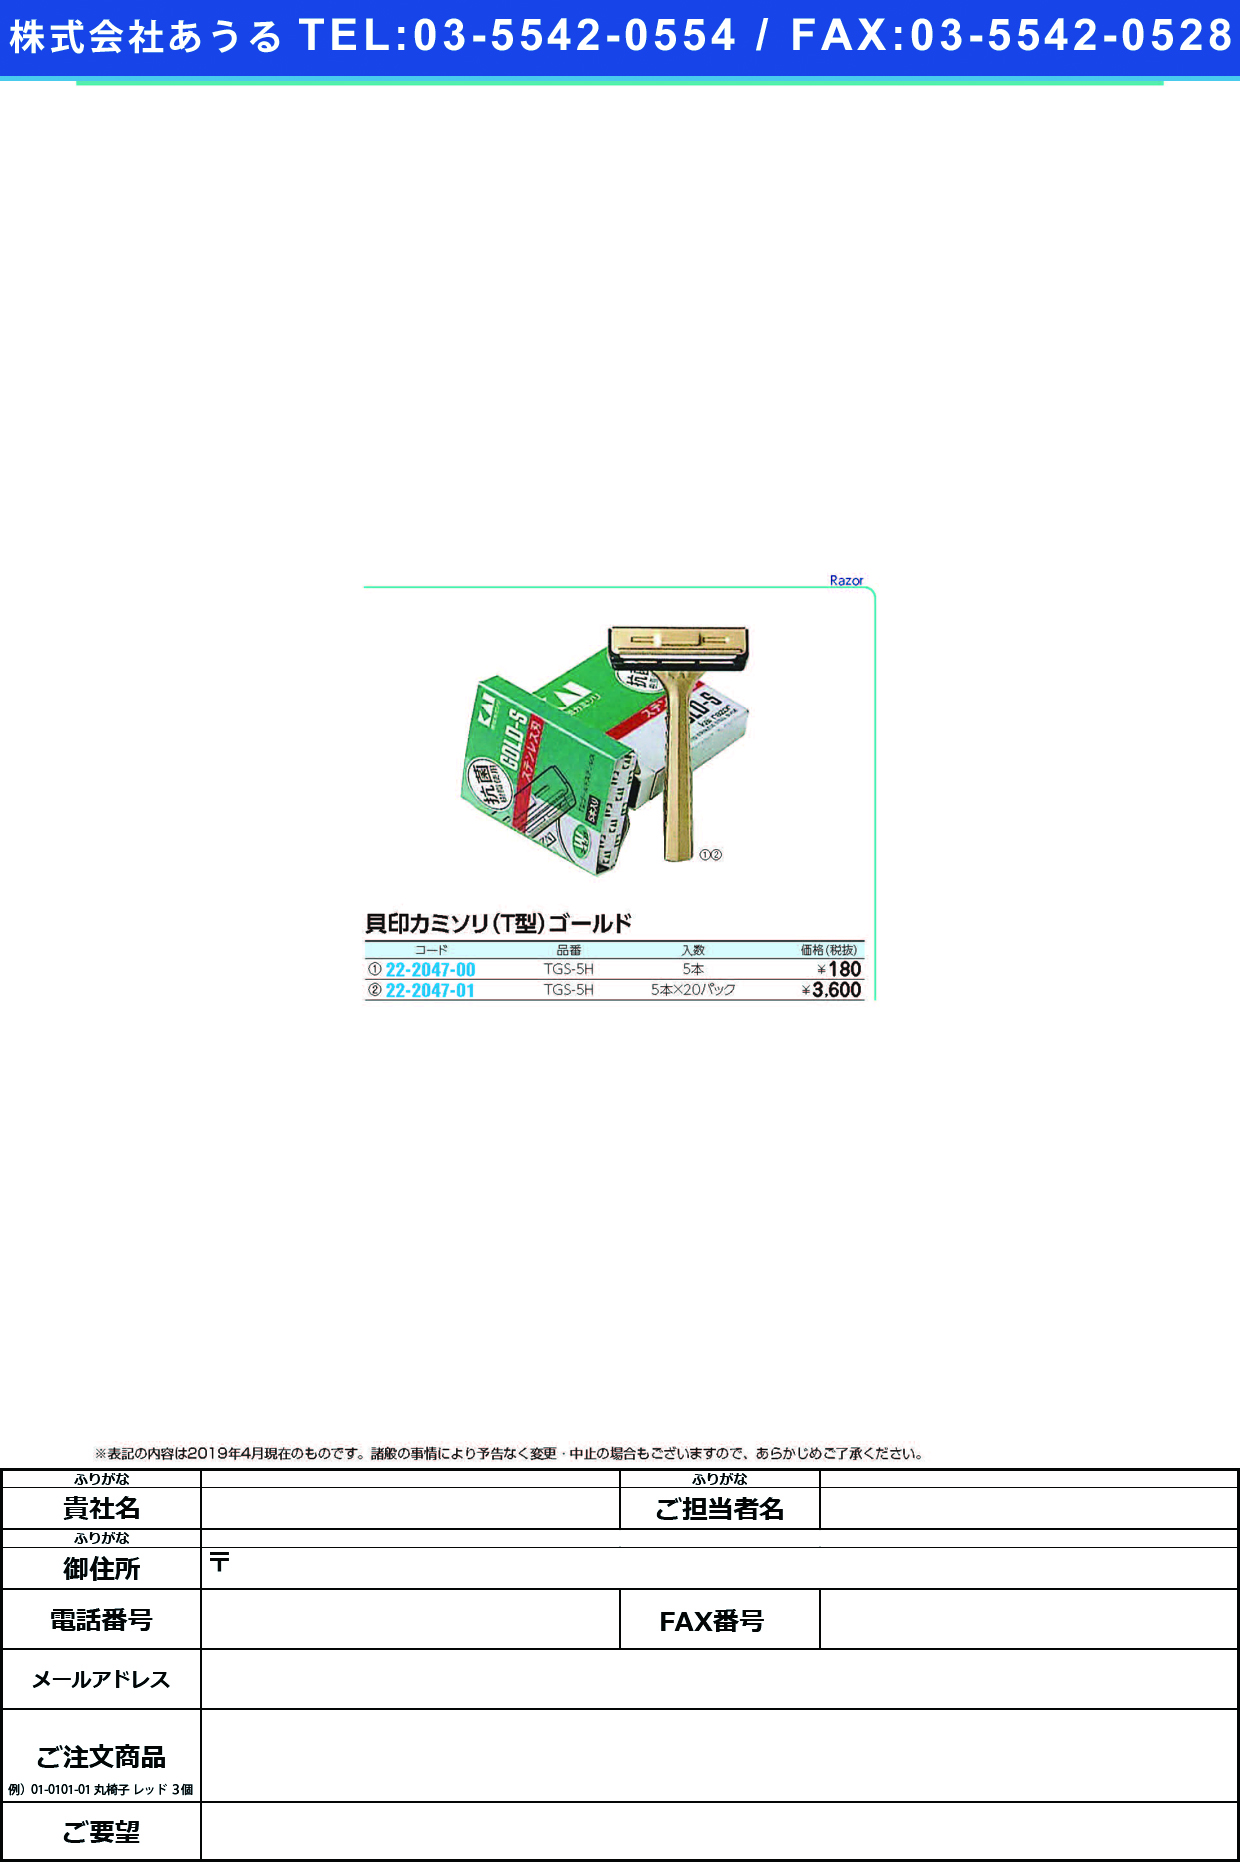 (22-2047-01)貝印カミソリＴ型ゴールドステンレス TGS-5H(5ﾎﾝX20ﾊﾟｯｸ) ｶﾐｿﾘTｶﾞﾀｺﾞｰﾙﾄﾞｽﾃﾝﾚｽ【1箱単位】【2019年カタログ商品】